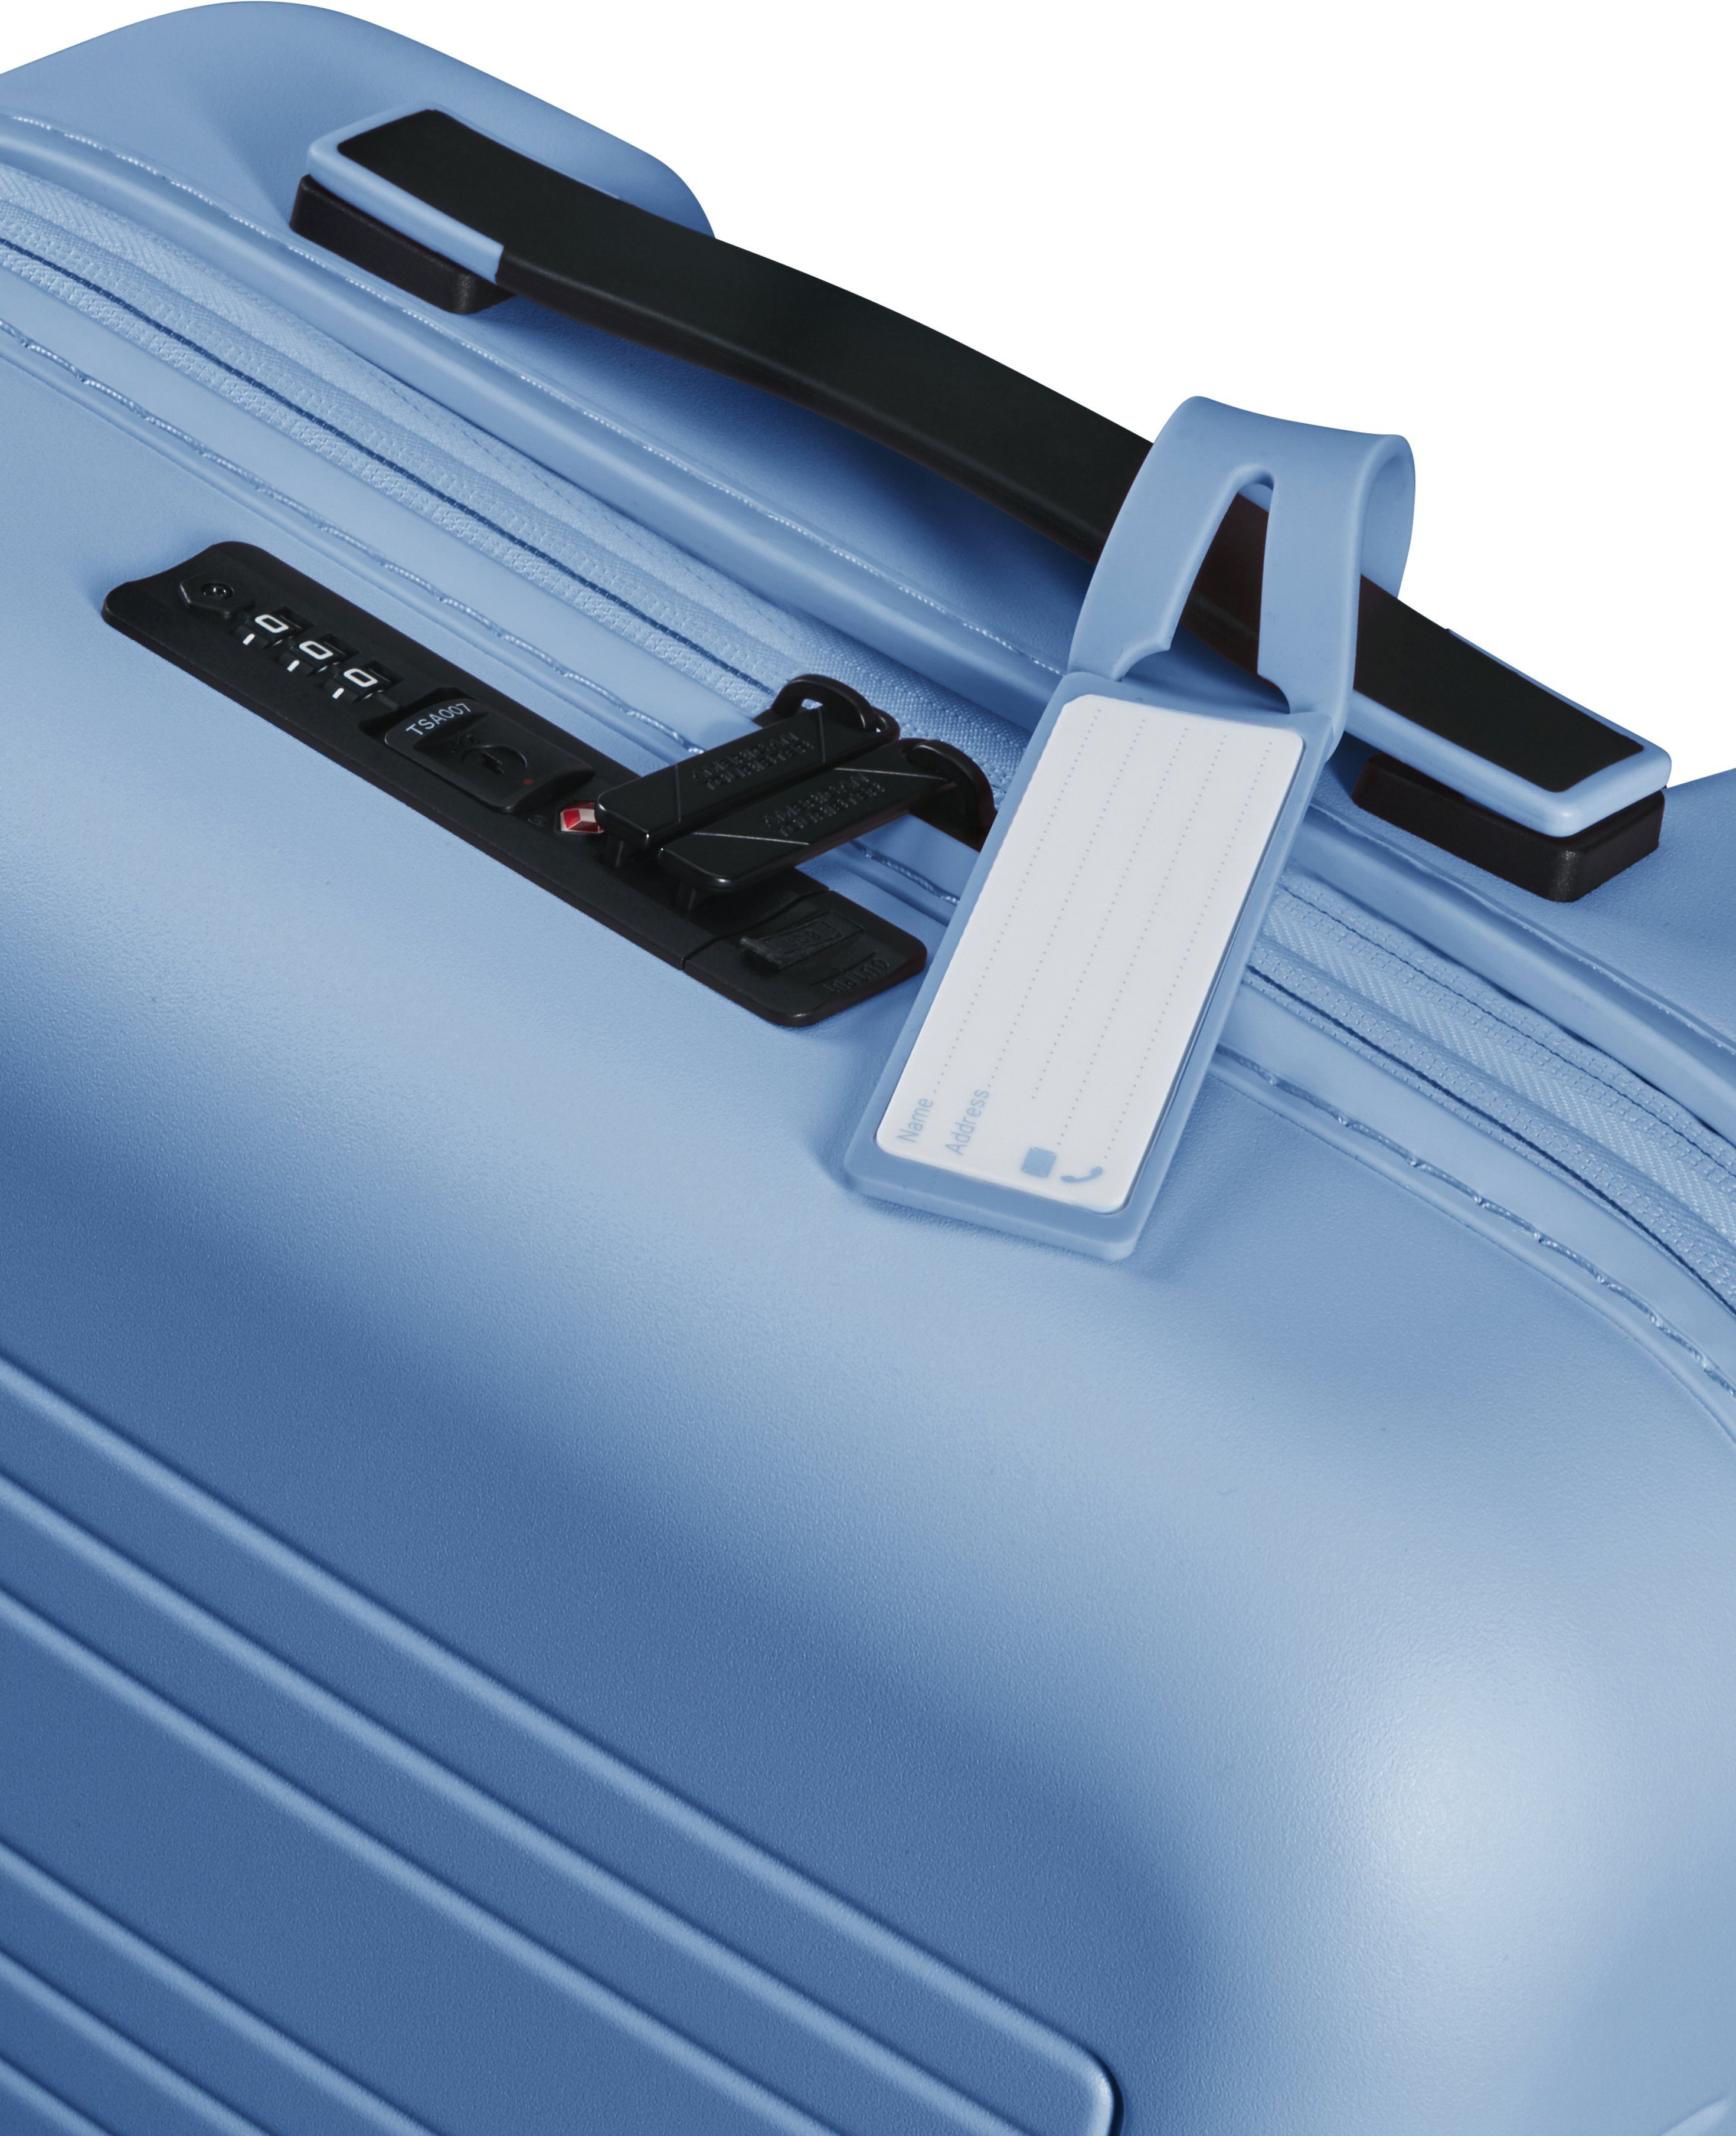 Rollen, Pastel Volumenerweiterung und cm, Novastream, Blue American Tourister® Hartschalen-Trolley mit 4 55 USB-Schleuse